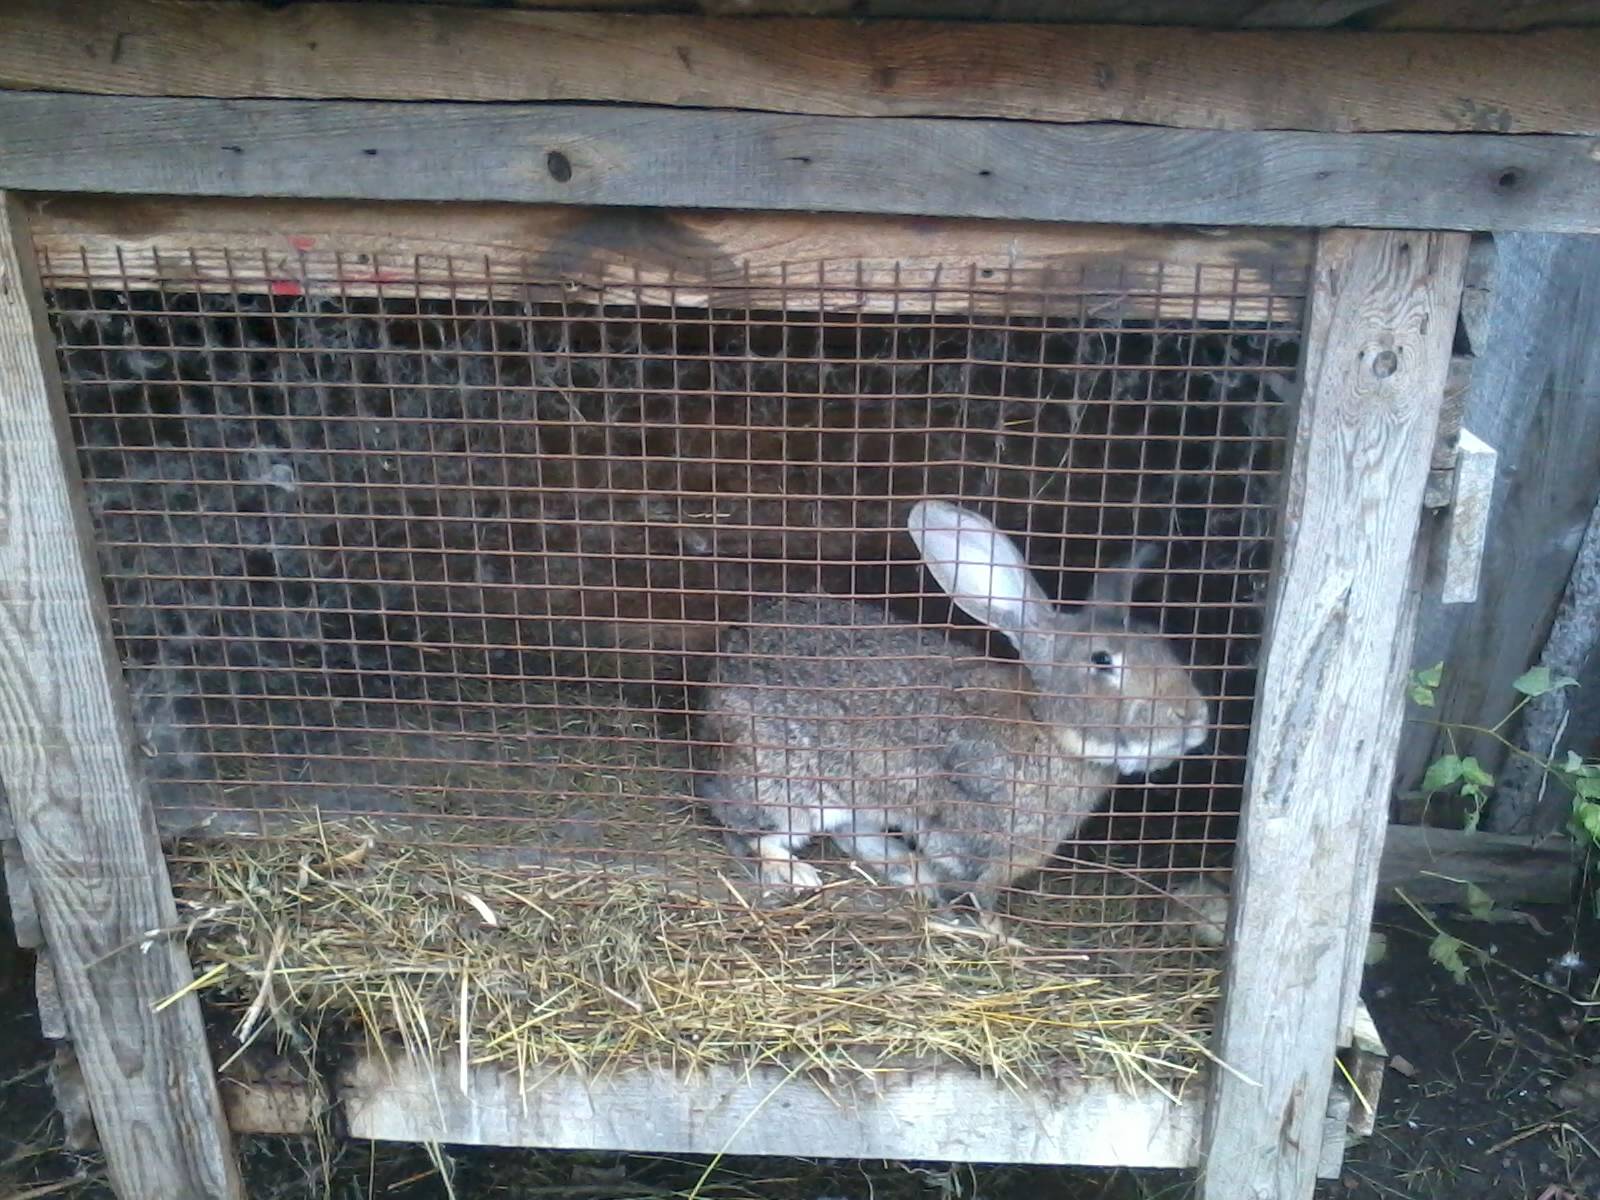 Выращивание кроликов на мясо в домашних условиях